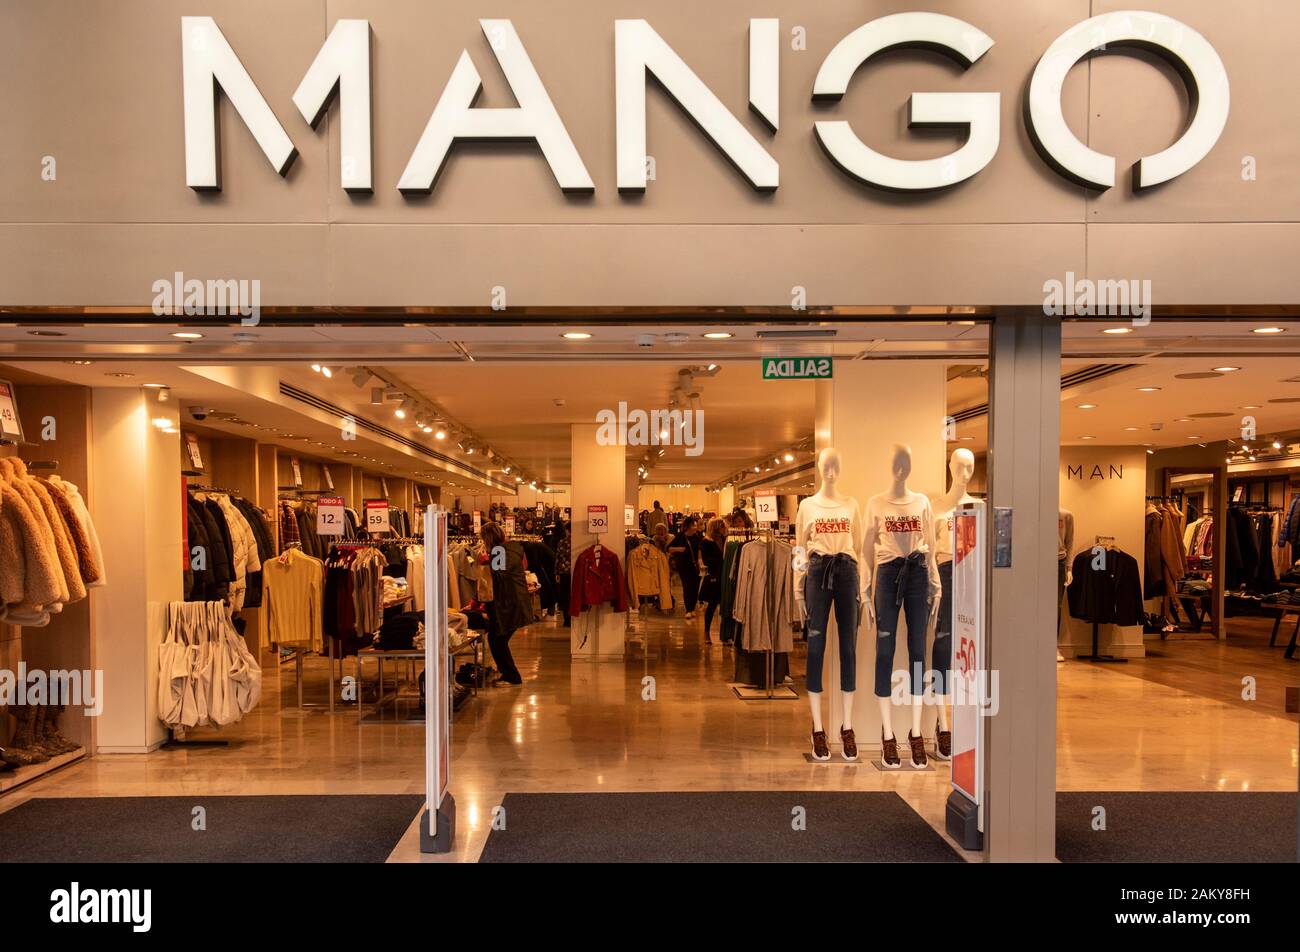 La multinacional española marca de tienda de Mango en España Fotografía de stock Alamy